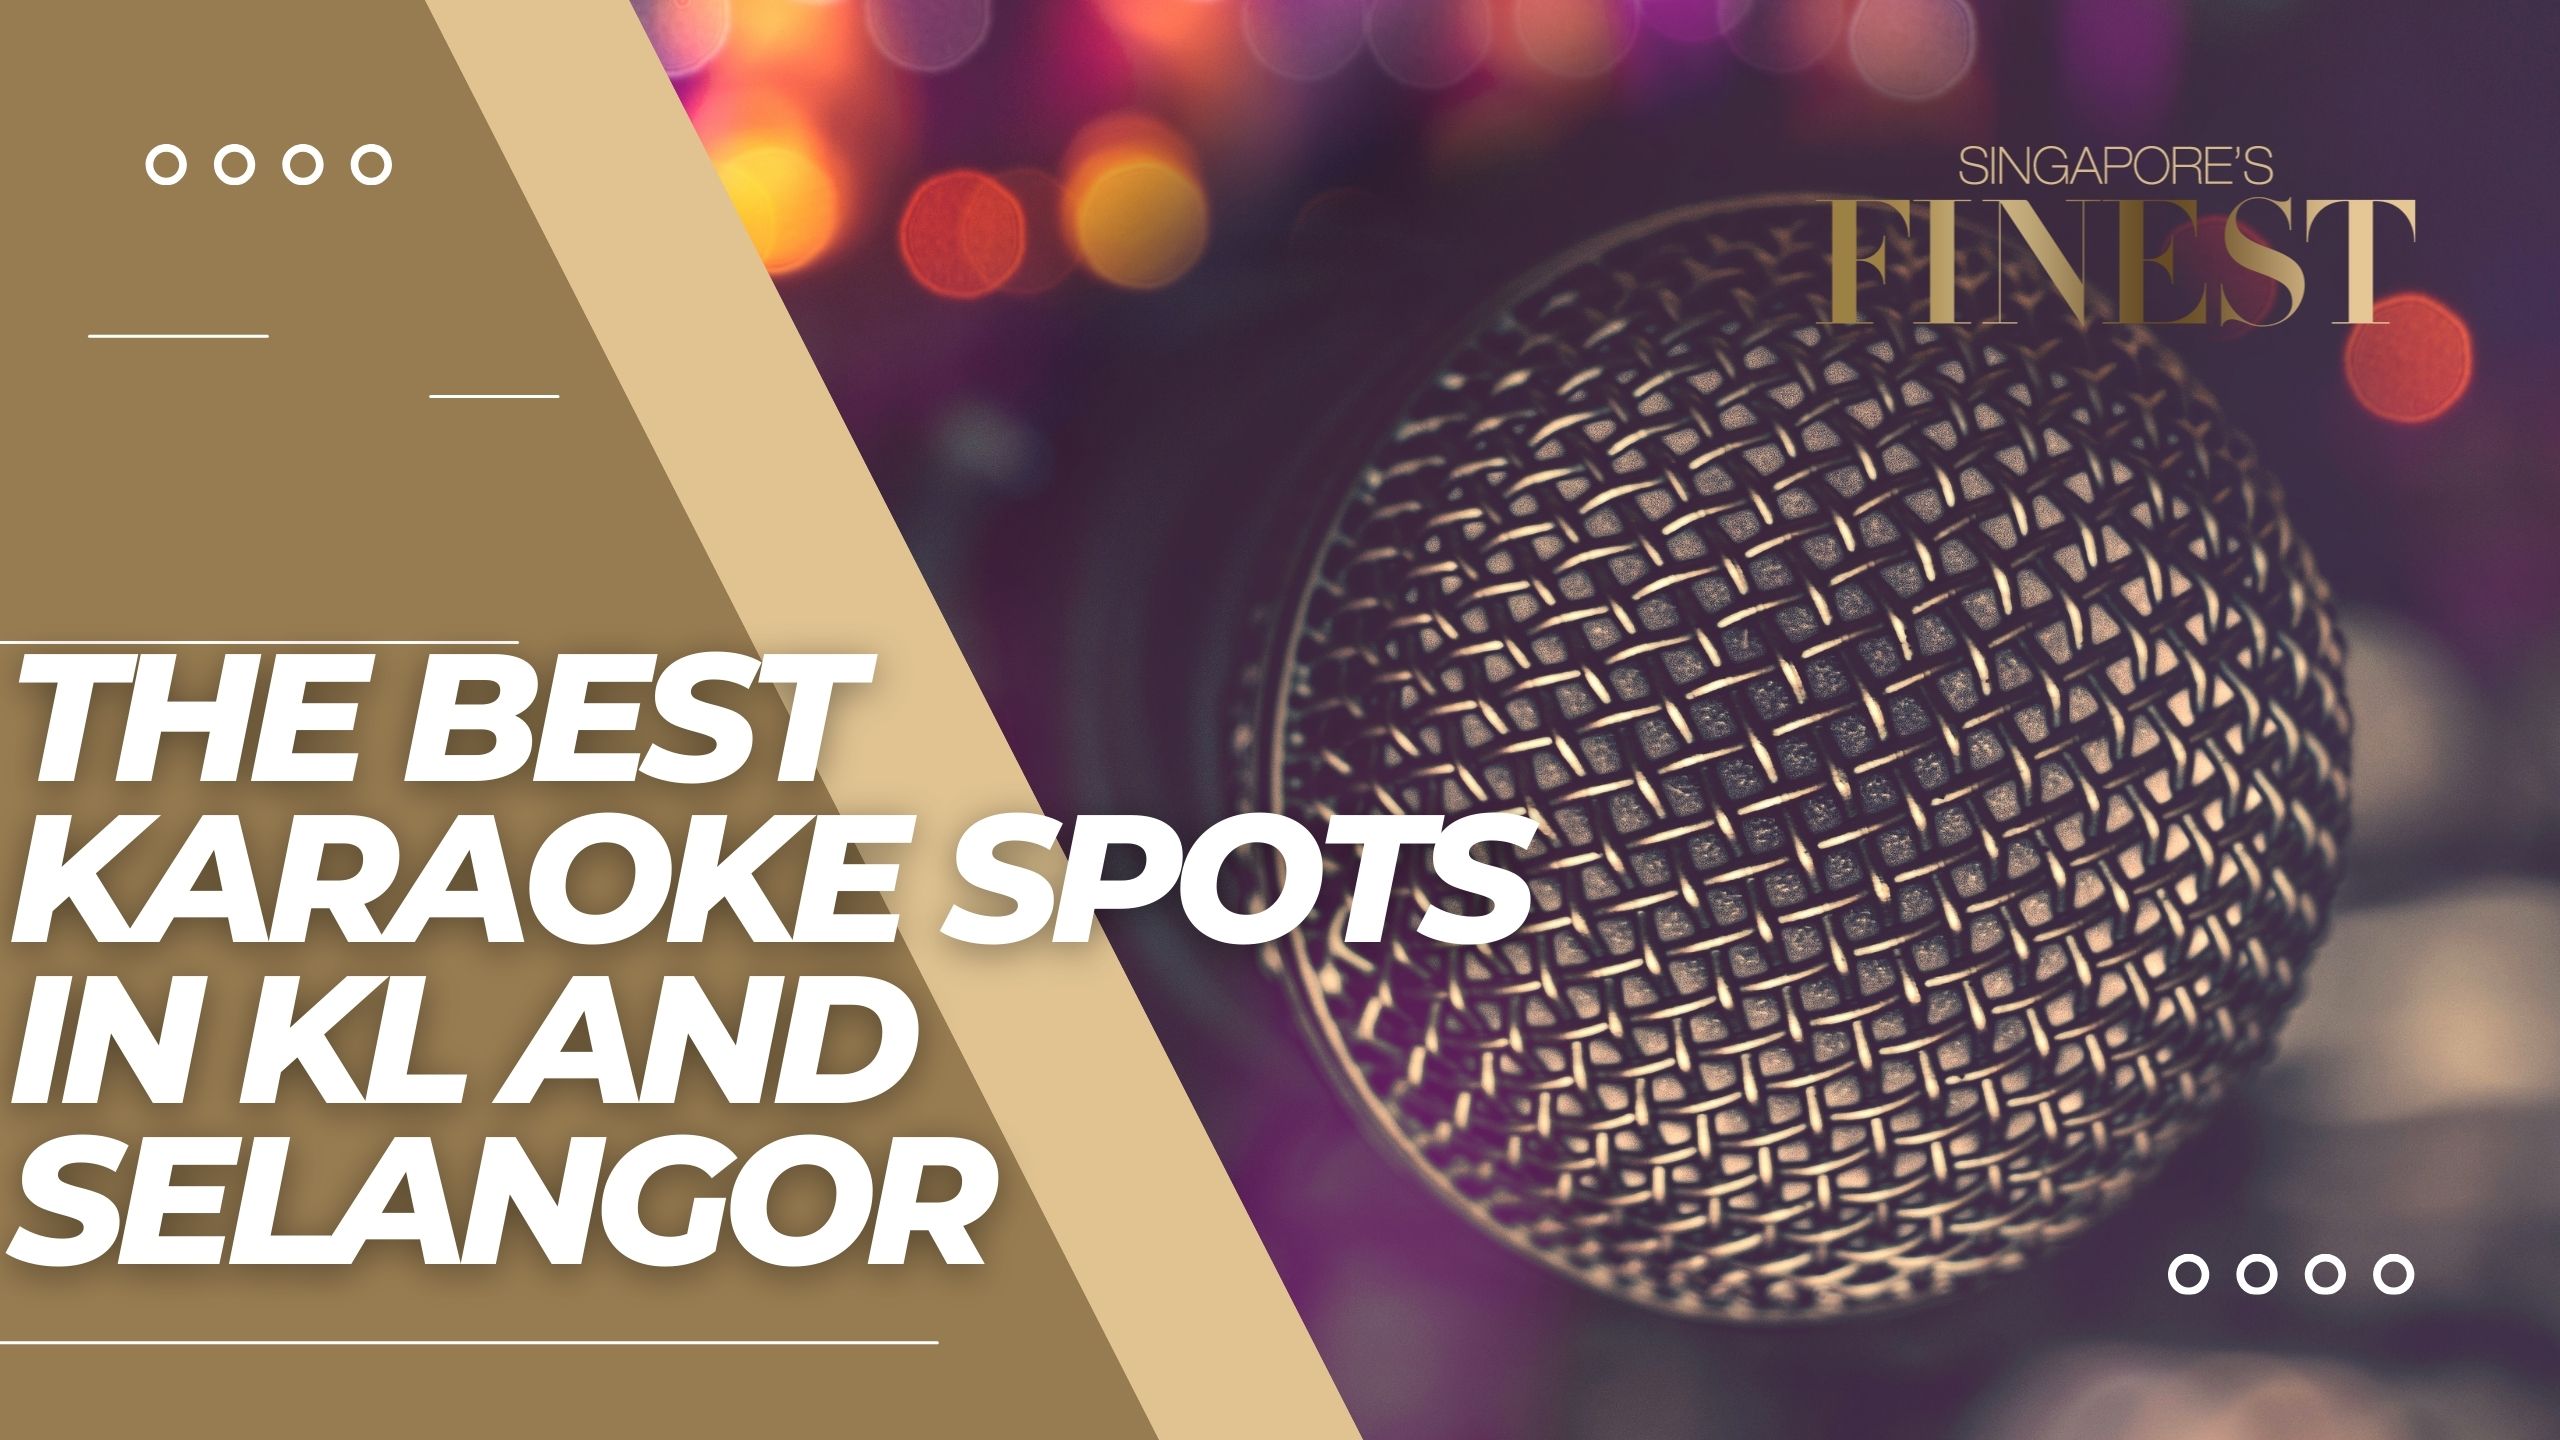 The Finest Karaoke Spots in KL and Selangor